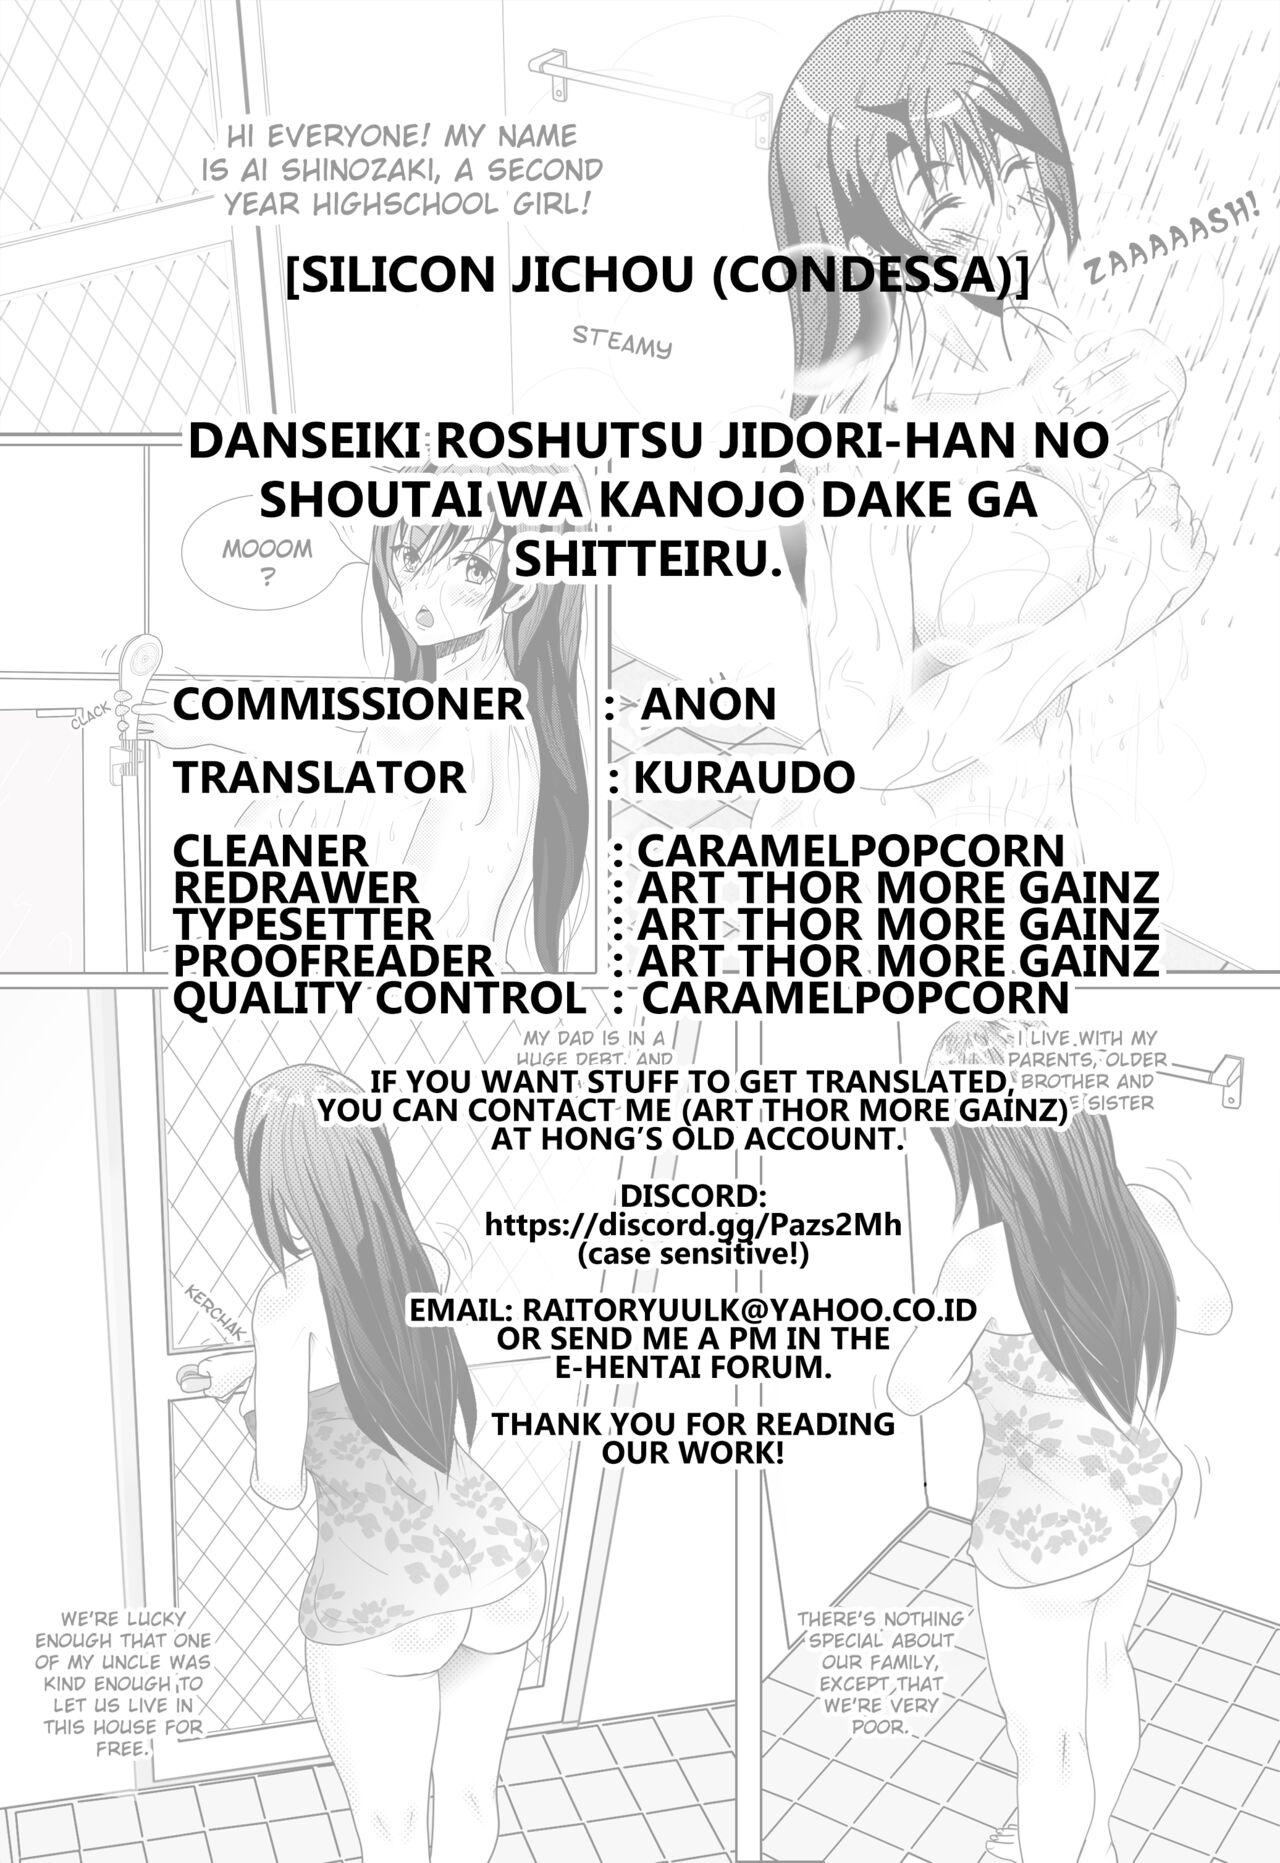 Danseiki Roshutsu Jidori-han no Shoutai wa Kanojo dake ga Shitteiru. 30